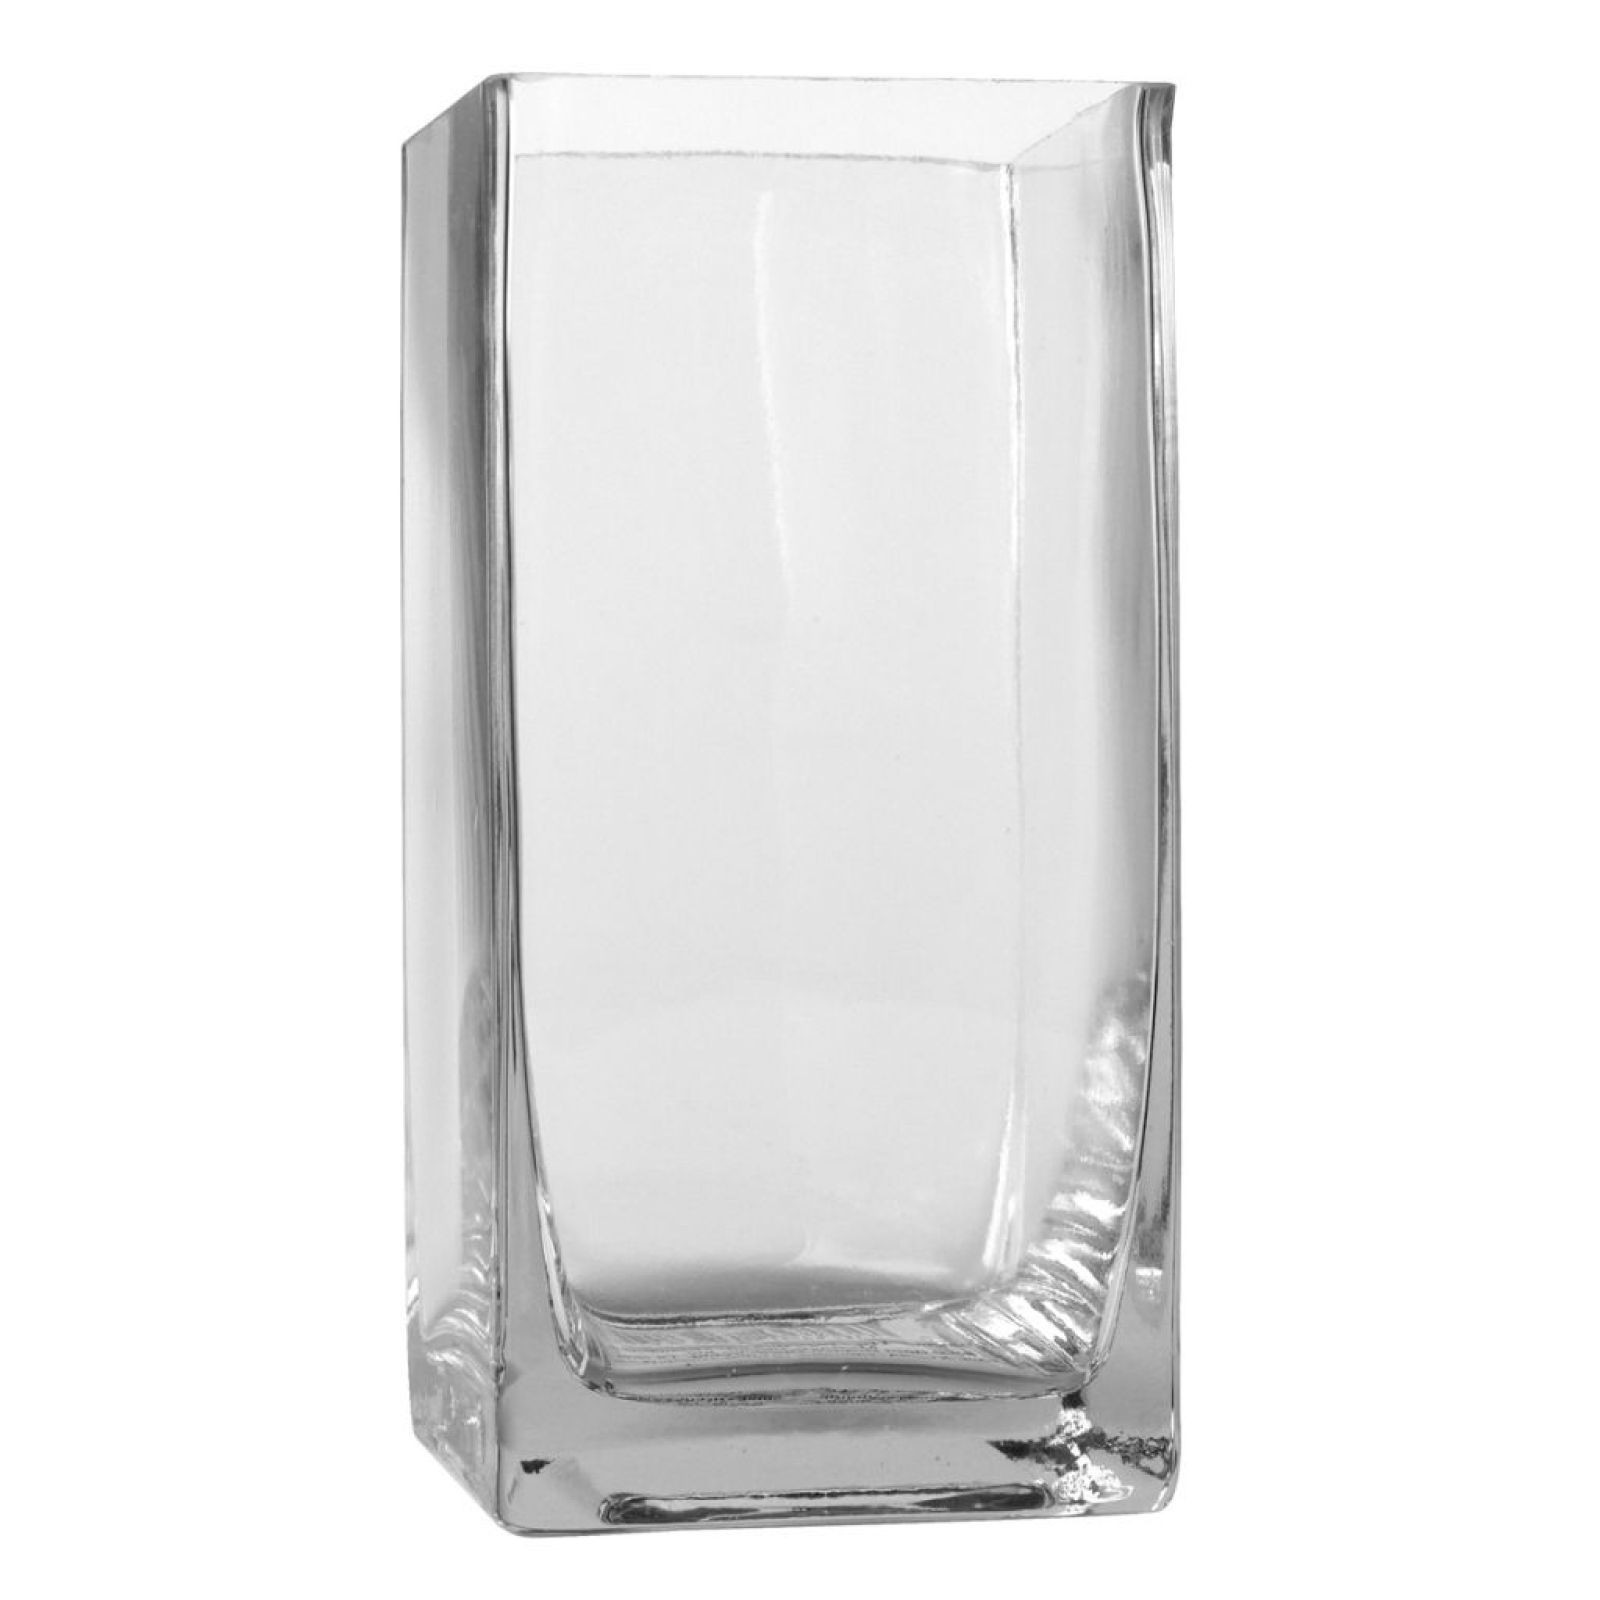 21 Unique 6 Glass Cylinder Vase 2024 free download 6 glass cylinder vase of ashland tall cube glass vase cube and glass pertaining to ashlanda tall cube glass vase 6